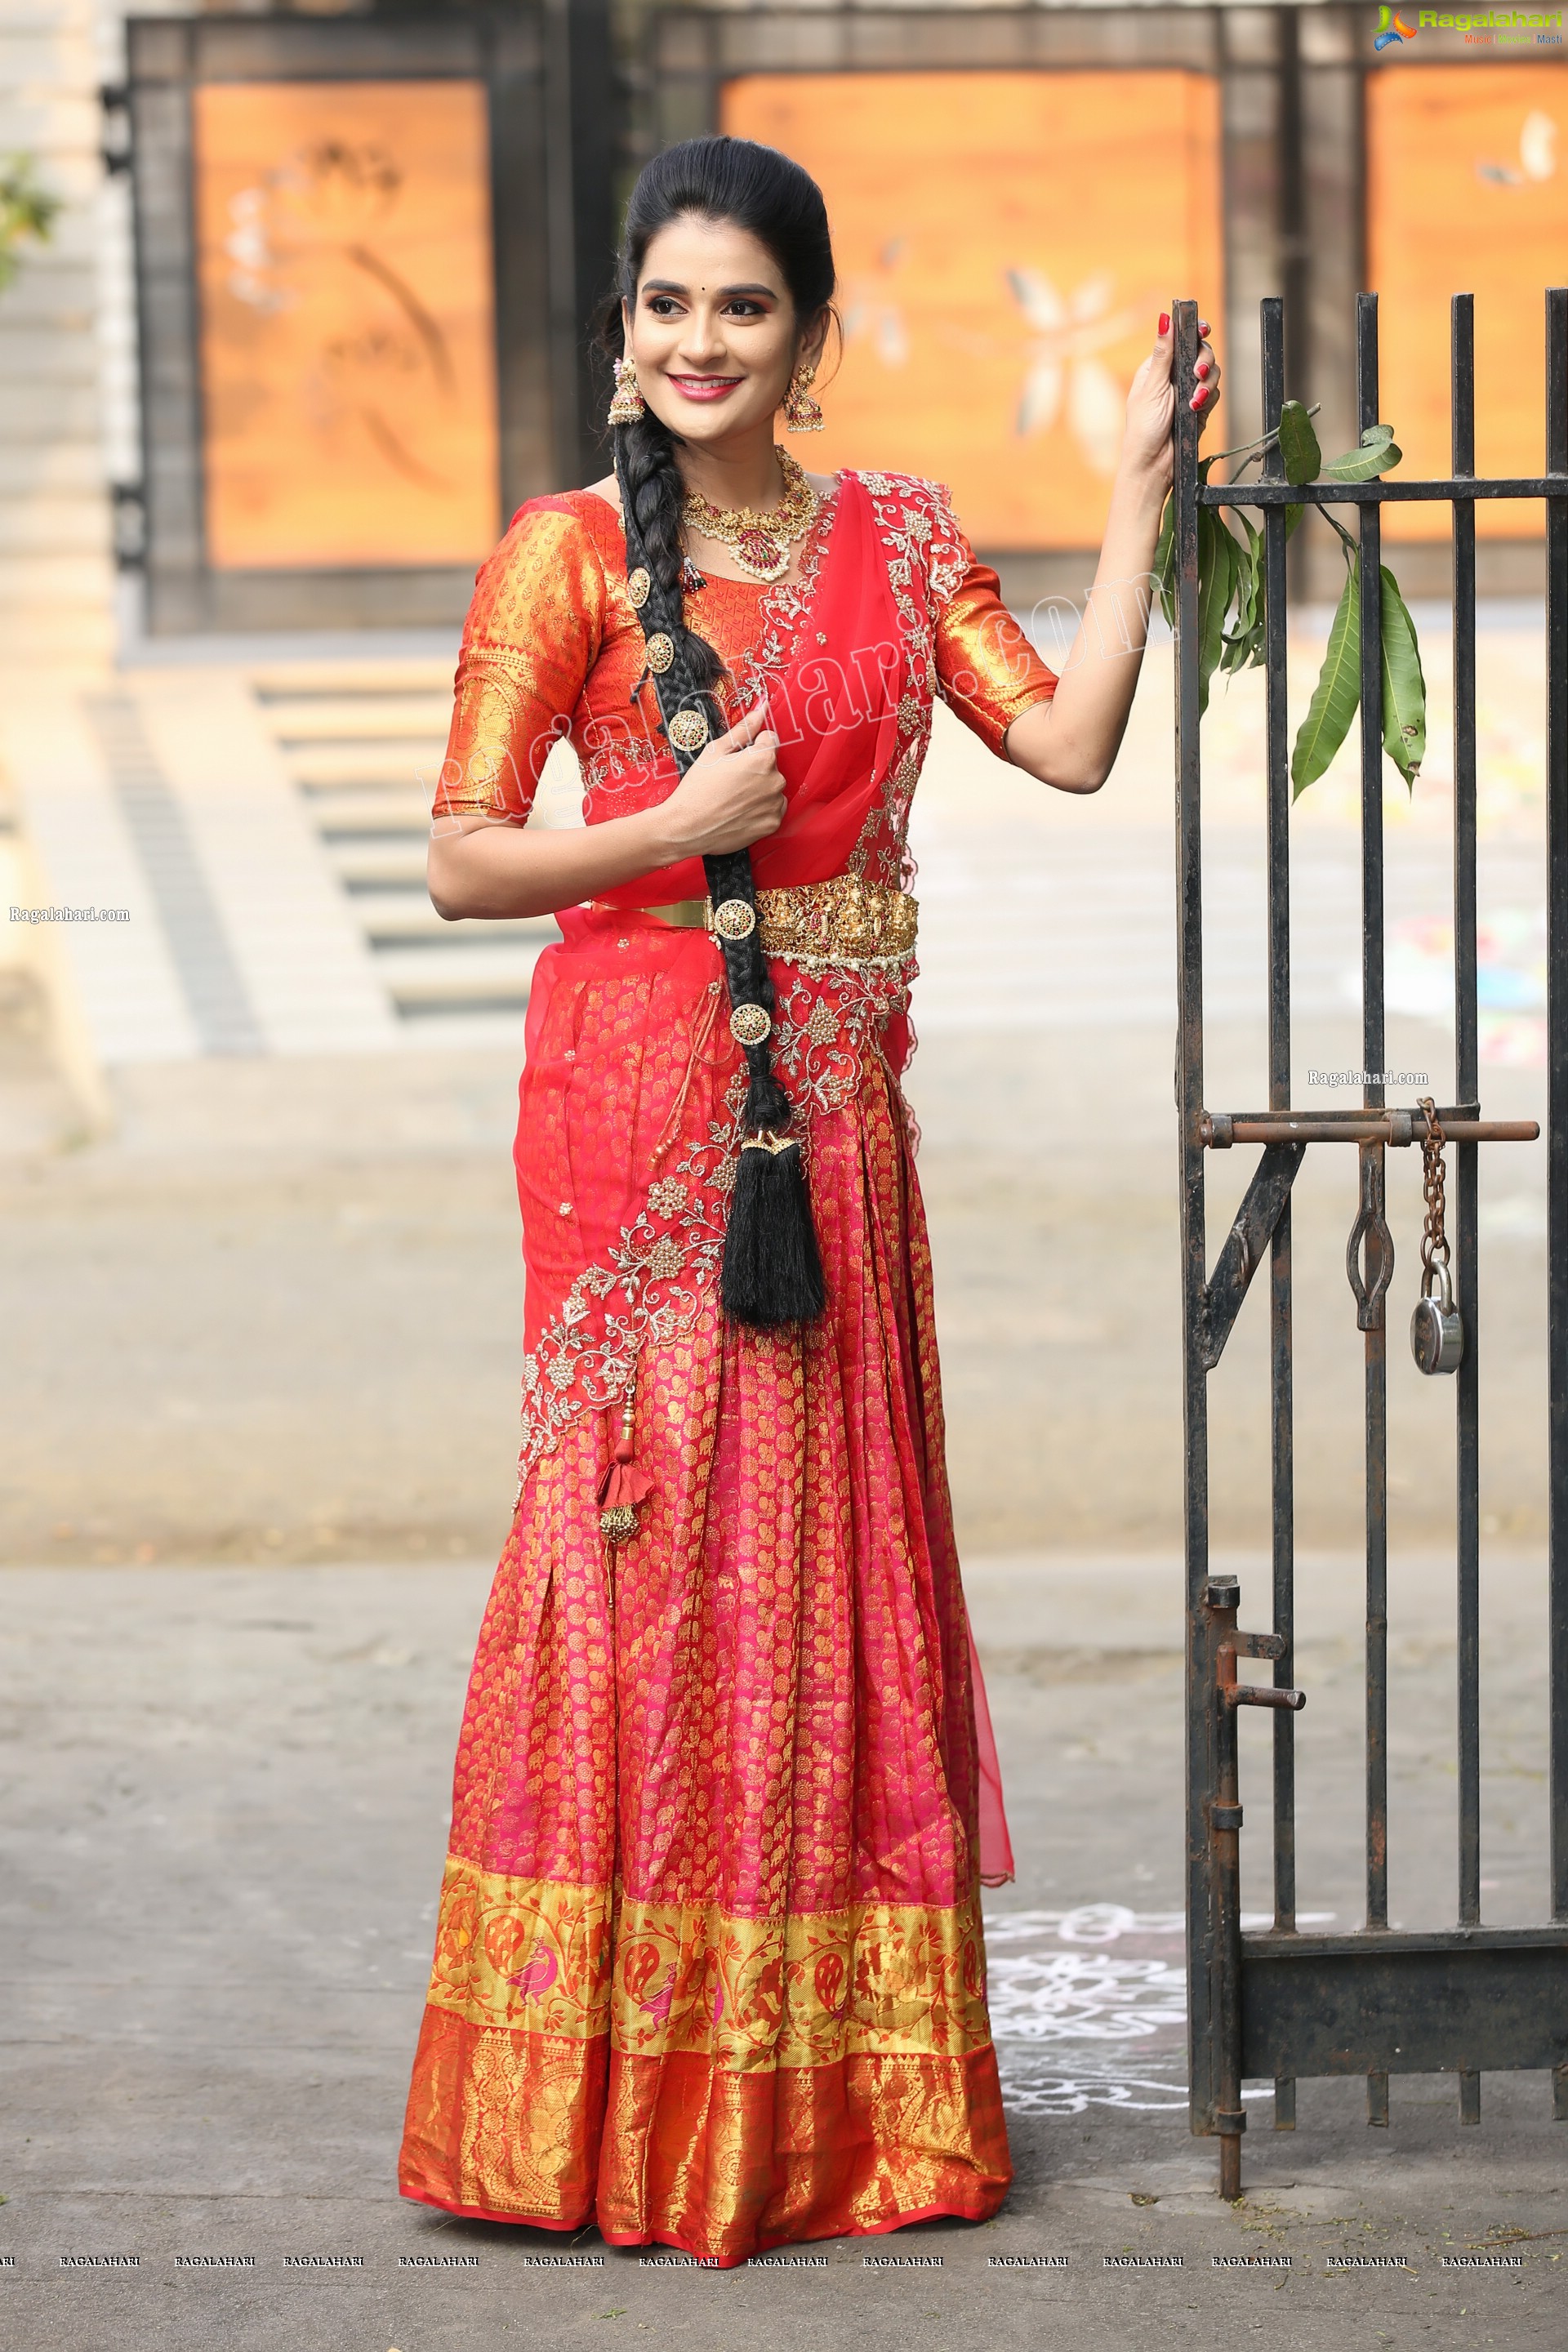 Jenny Honey in Red Embellished Lehenga Choli, Exclusive Photo Shoot